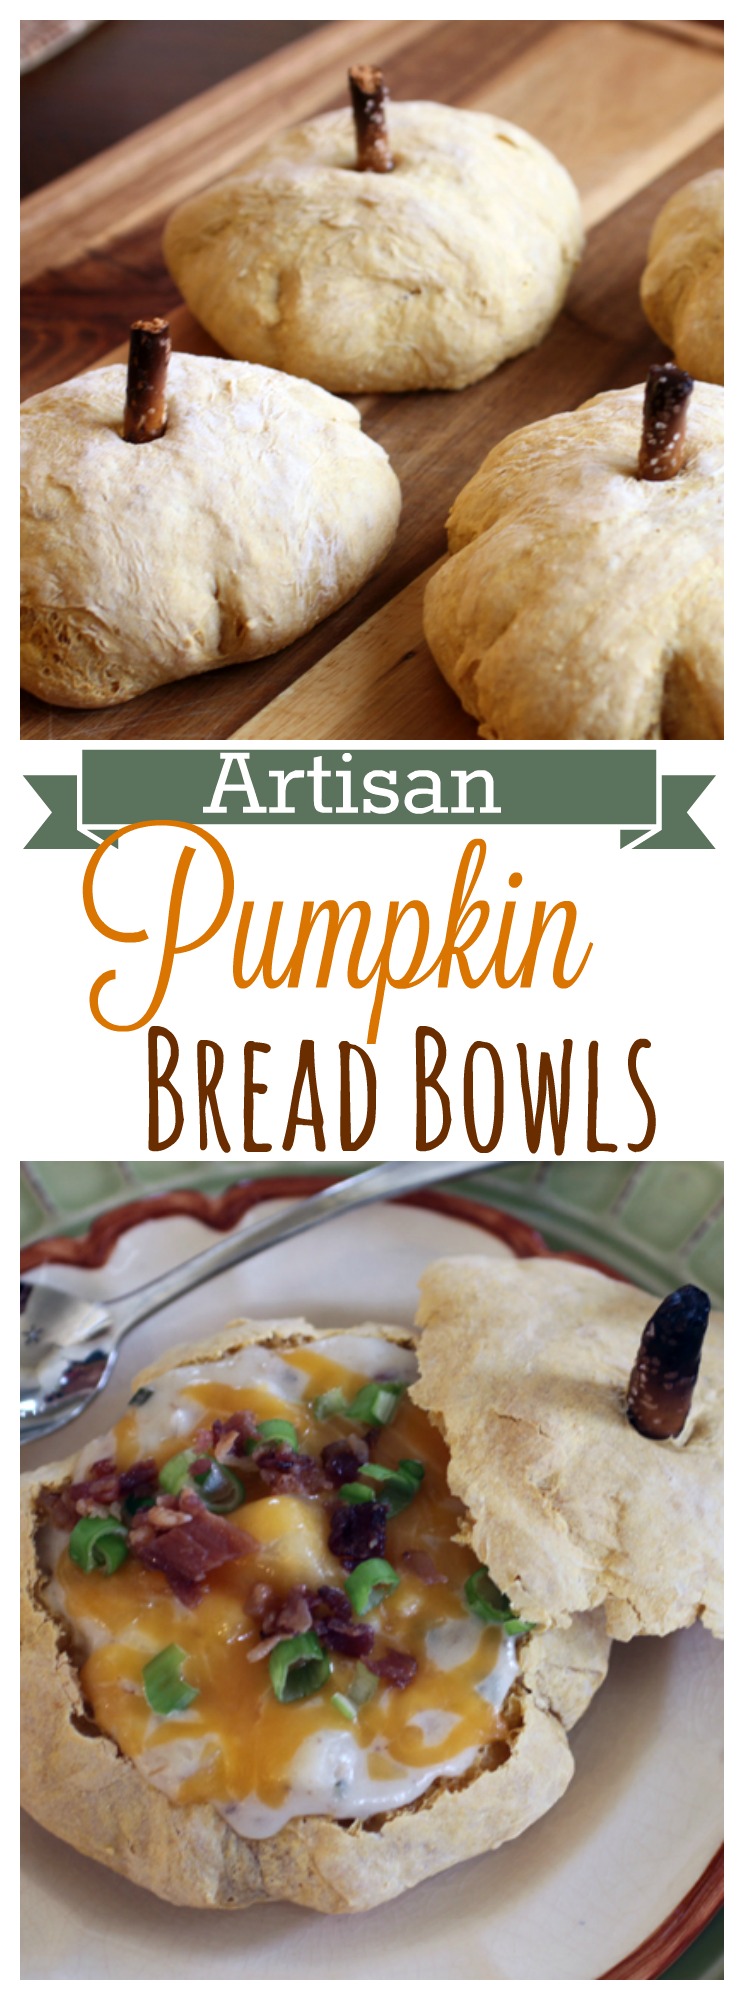 Artisan Pumpkin Bread Bowls